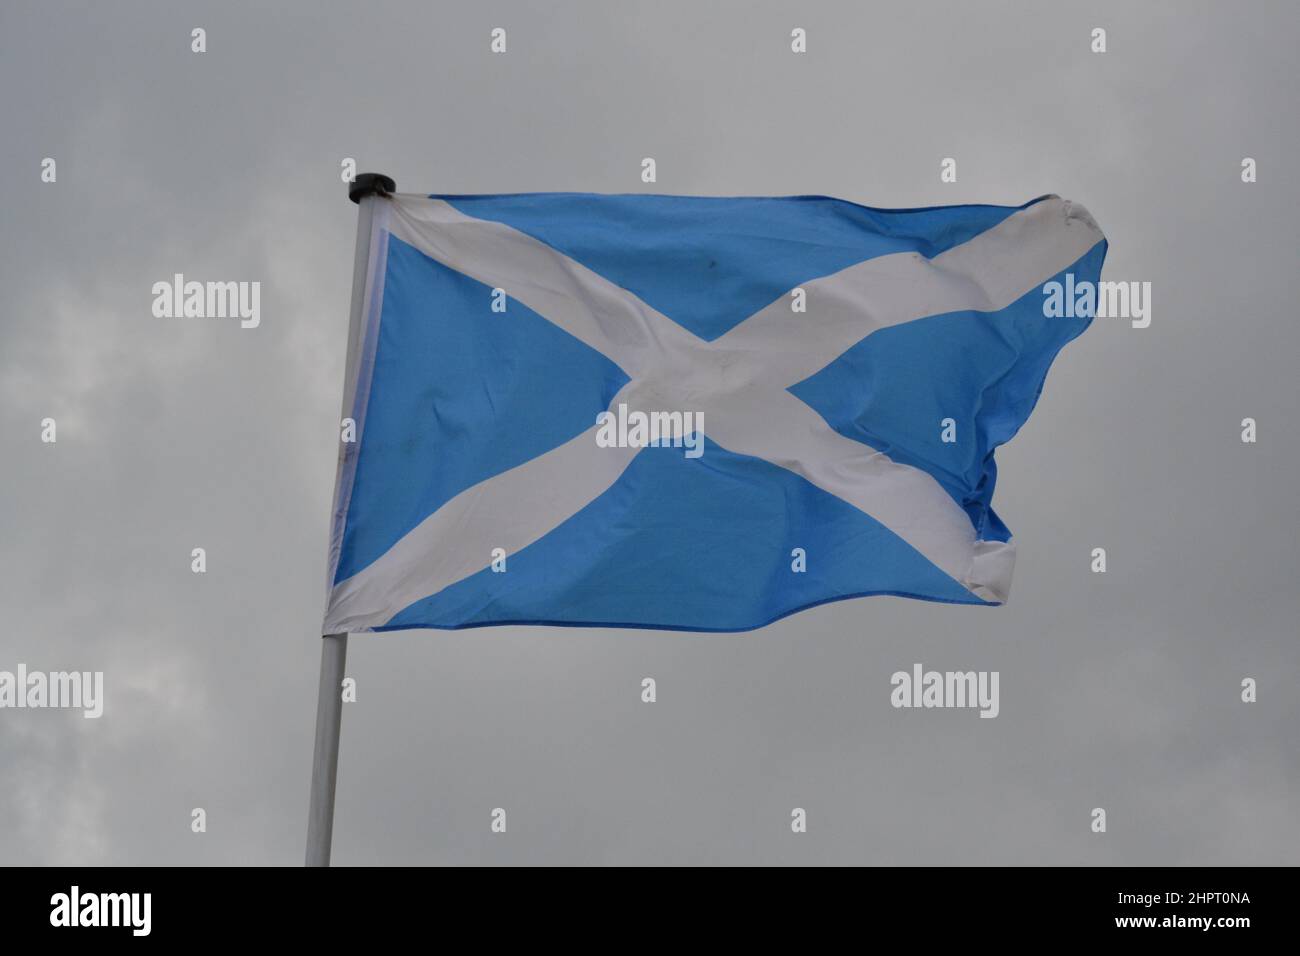 Schottland National Flag Flying - Blaue und Weiße Flagge - Windy Bewölkt Day - Yorkshire - UK Stockfoto